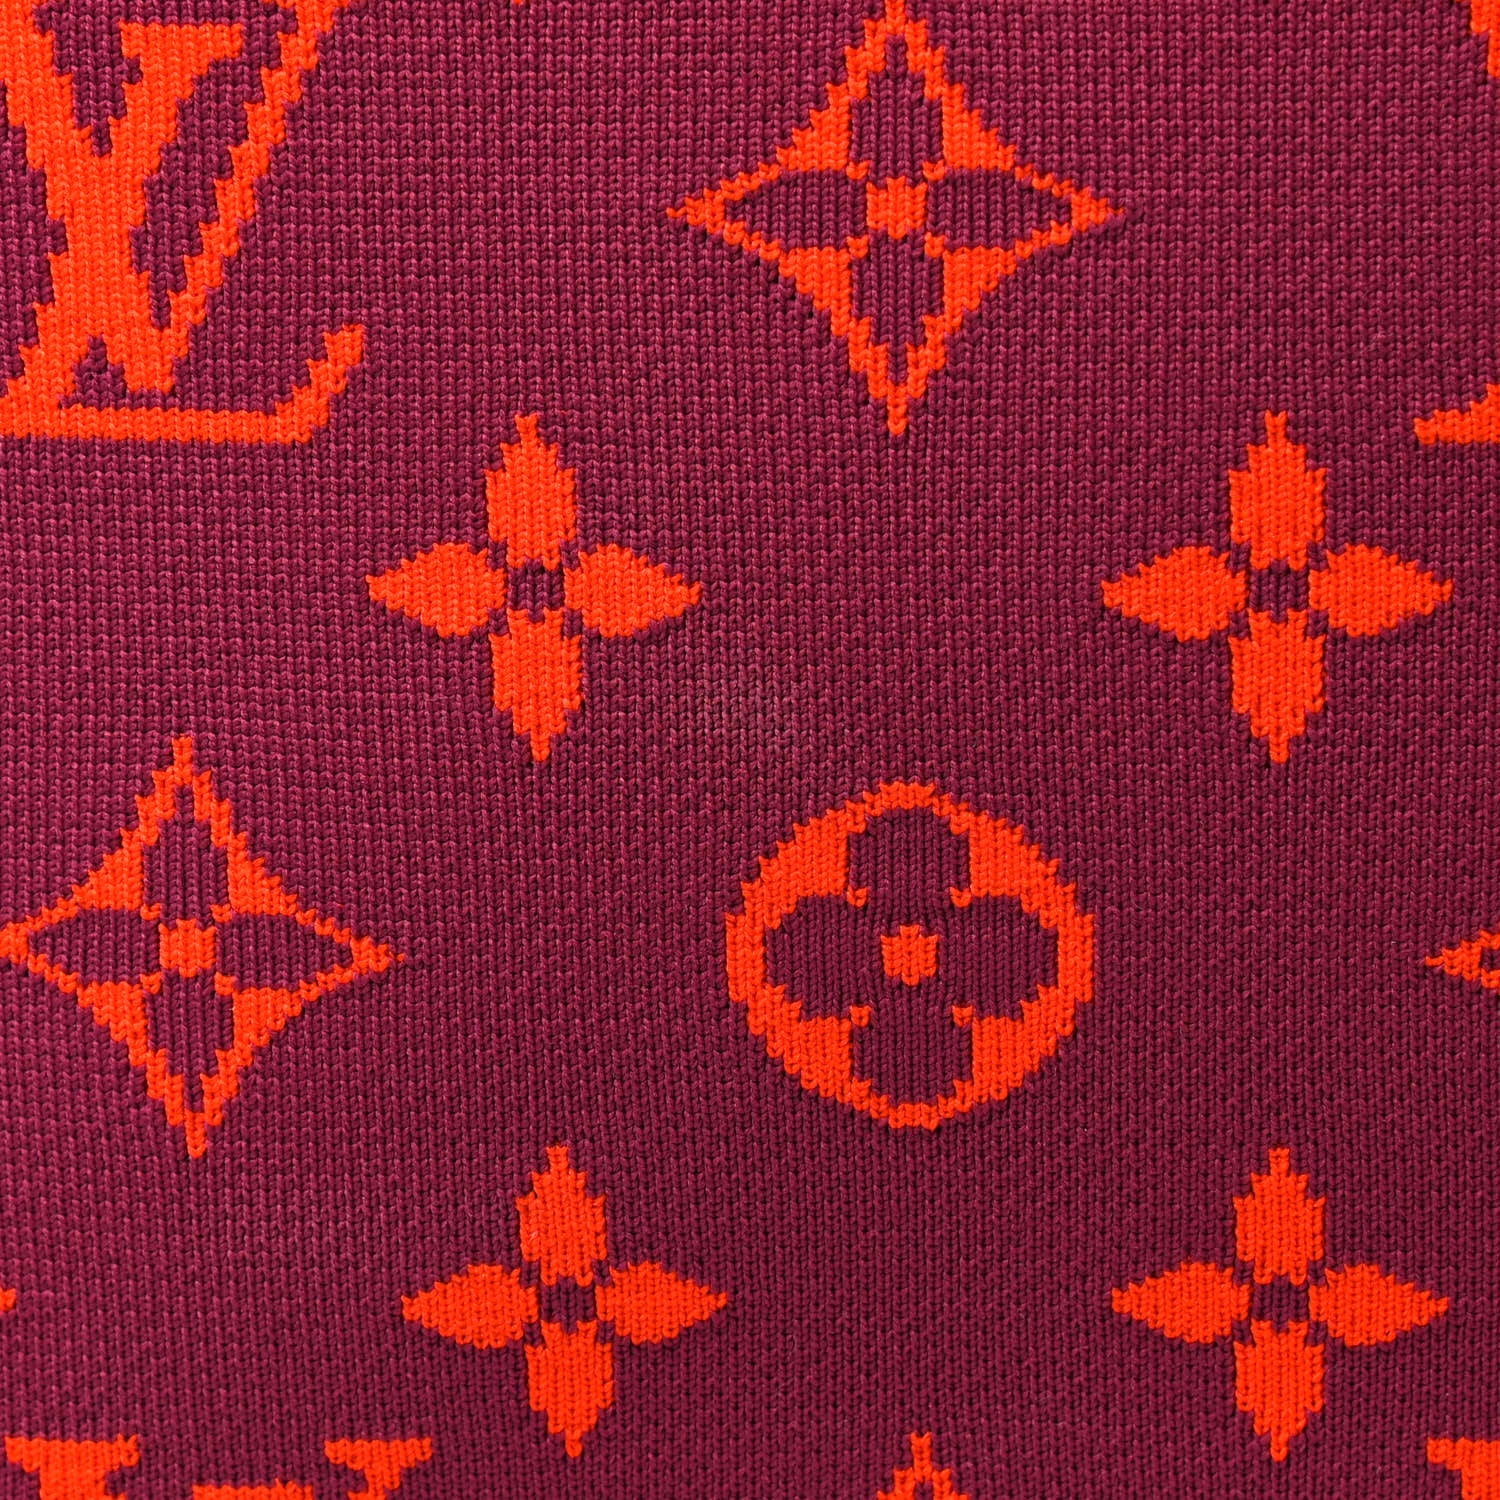 RvceShops's Closet - Louis Vuitton Black Monogram Fabric Horizon Soft 55  Rolling Suitcase - Женские Украшения Pre-Owned Louis Vuitton